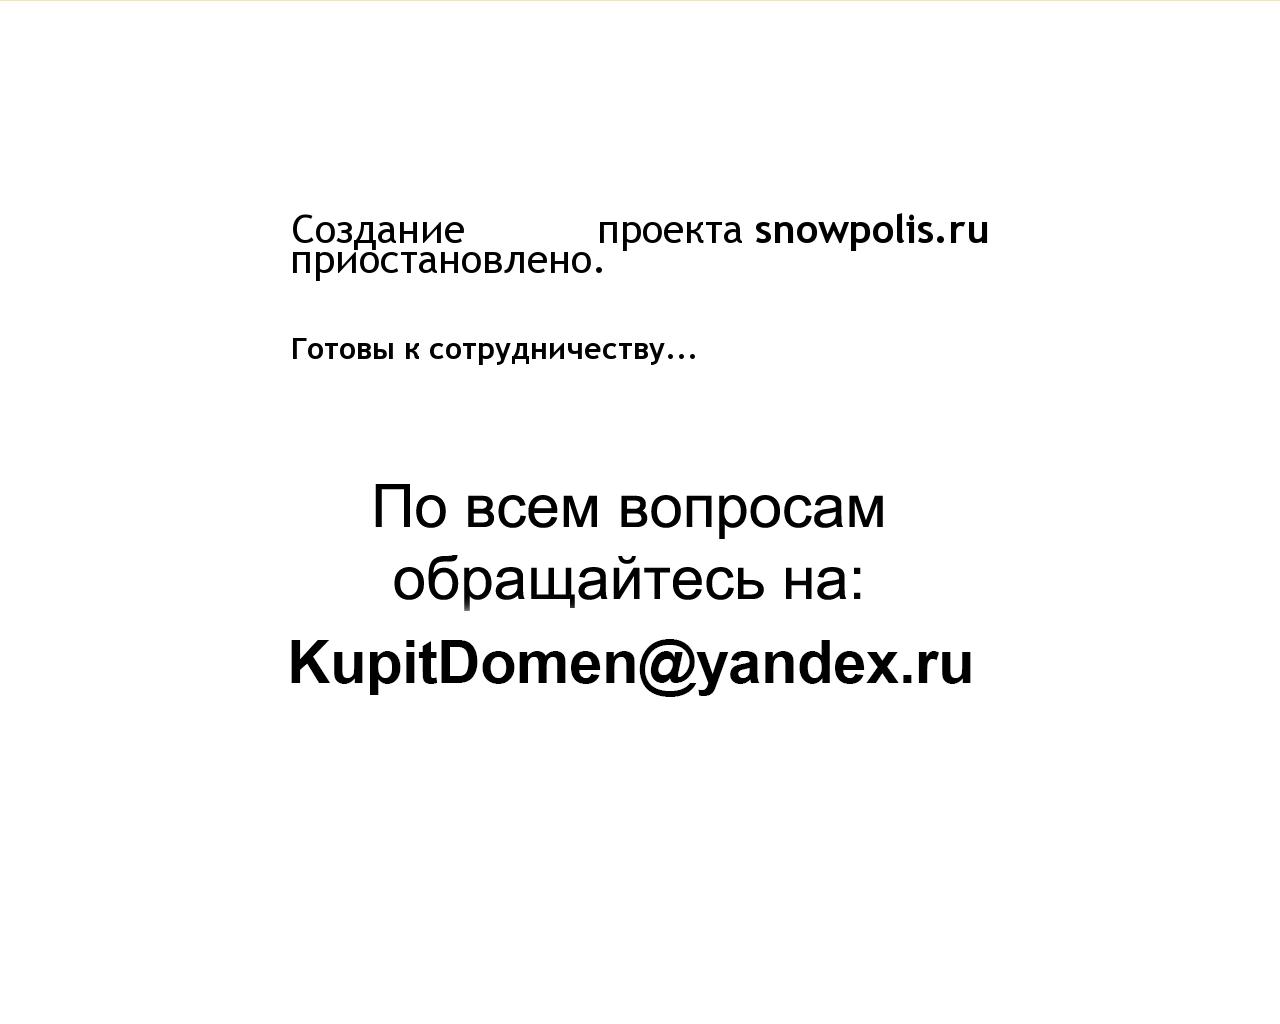 Изображение сайта snowpolis.ru в разрешении 1280x1024